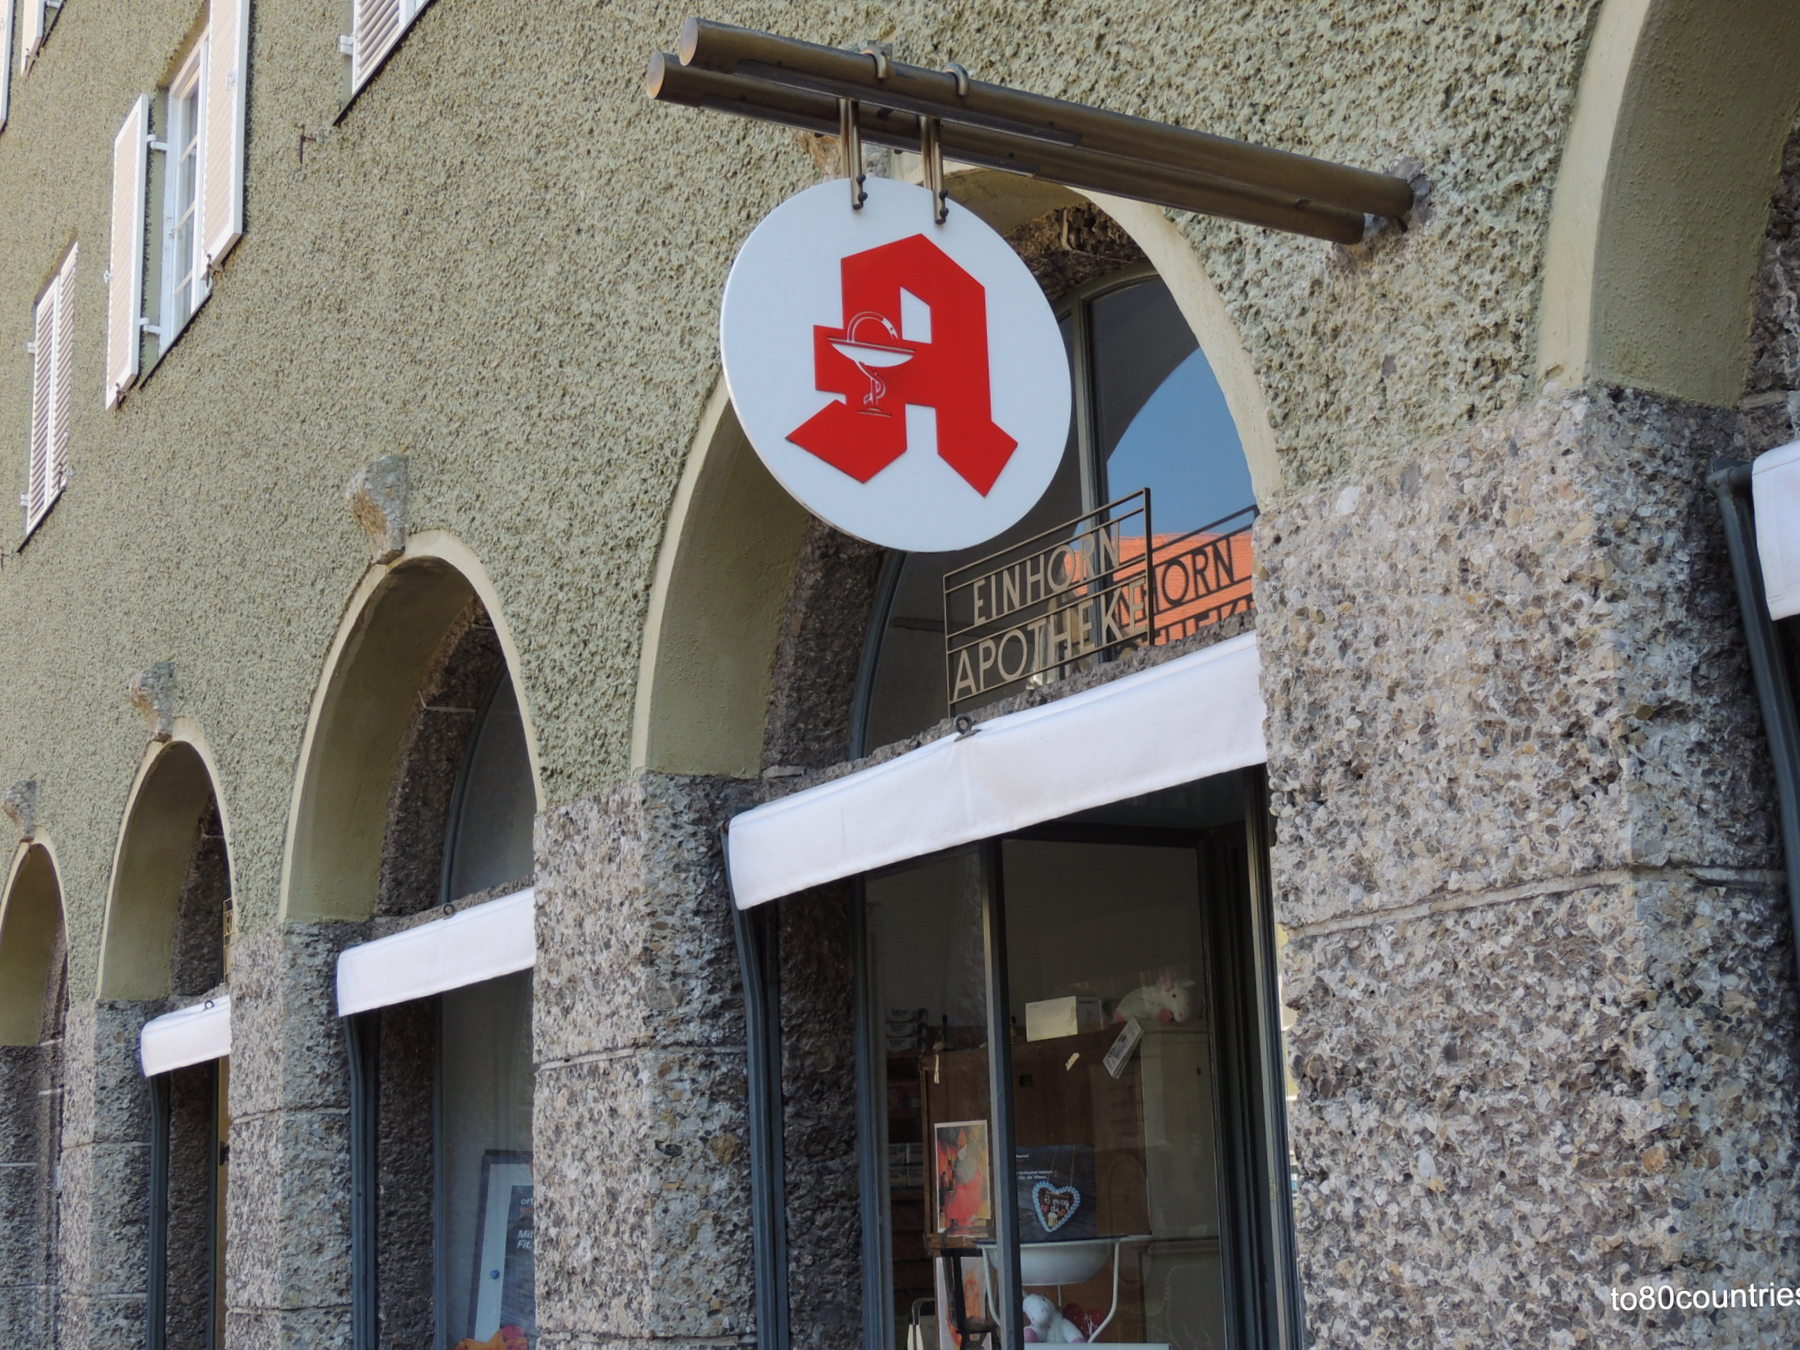 Franz-Marc-Straße 6 - Einhorn Apotheke in der Borstei